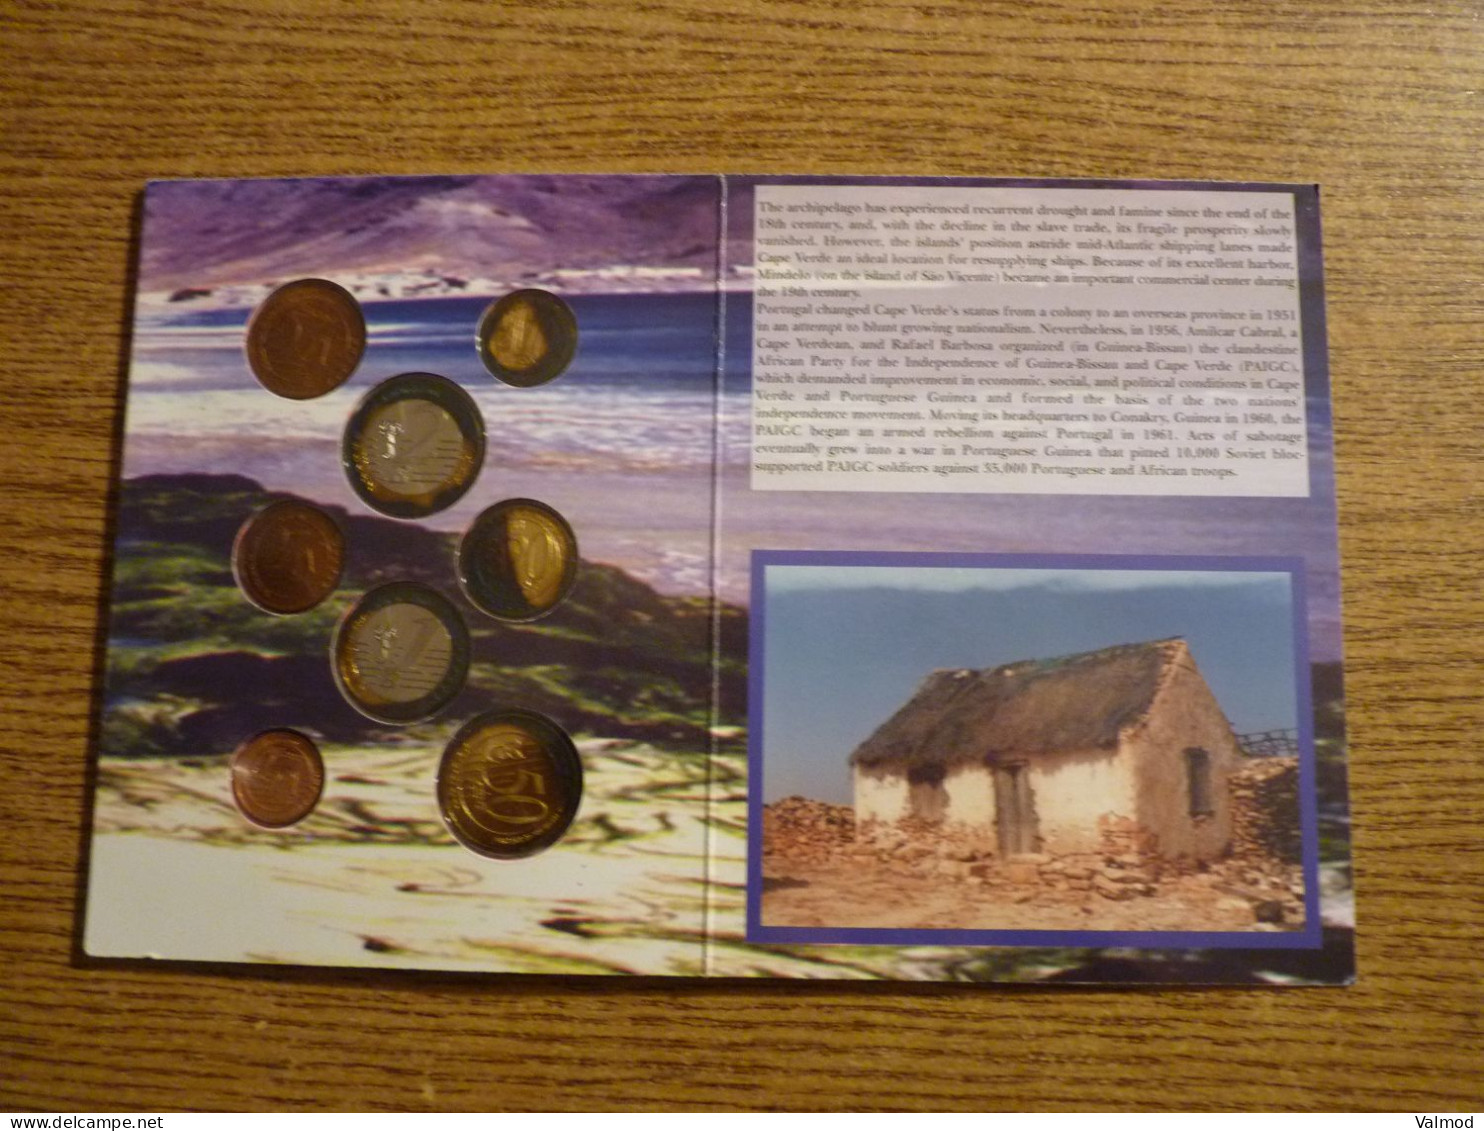 Coffret Republic of Capo Verde - Euro Patterns - Série de 8 pièces de 1 centime à 2 euros (prototypes) - 11,6x15cm env.